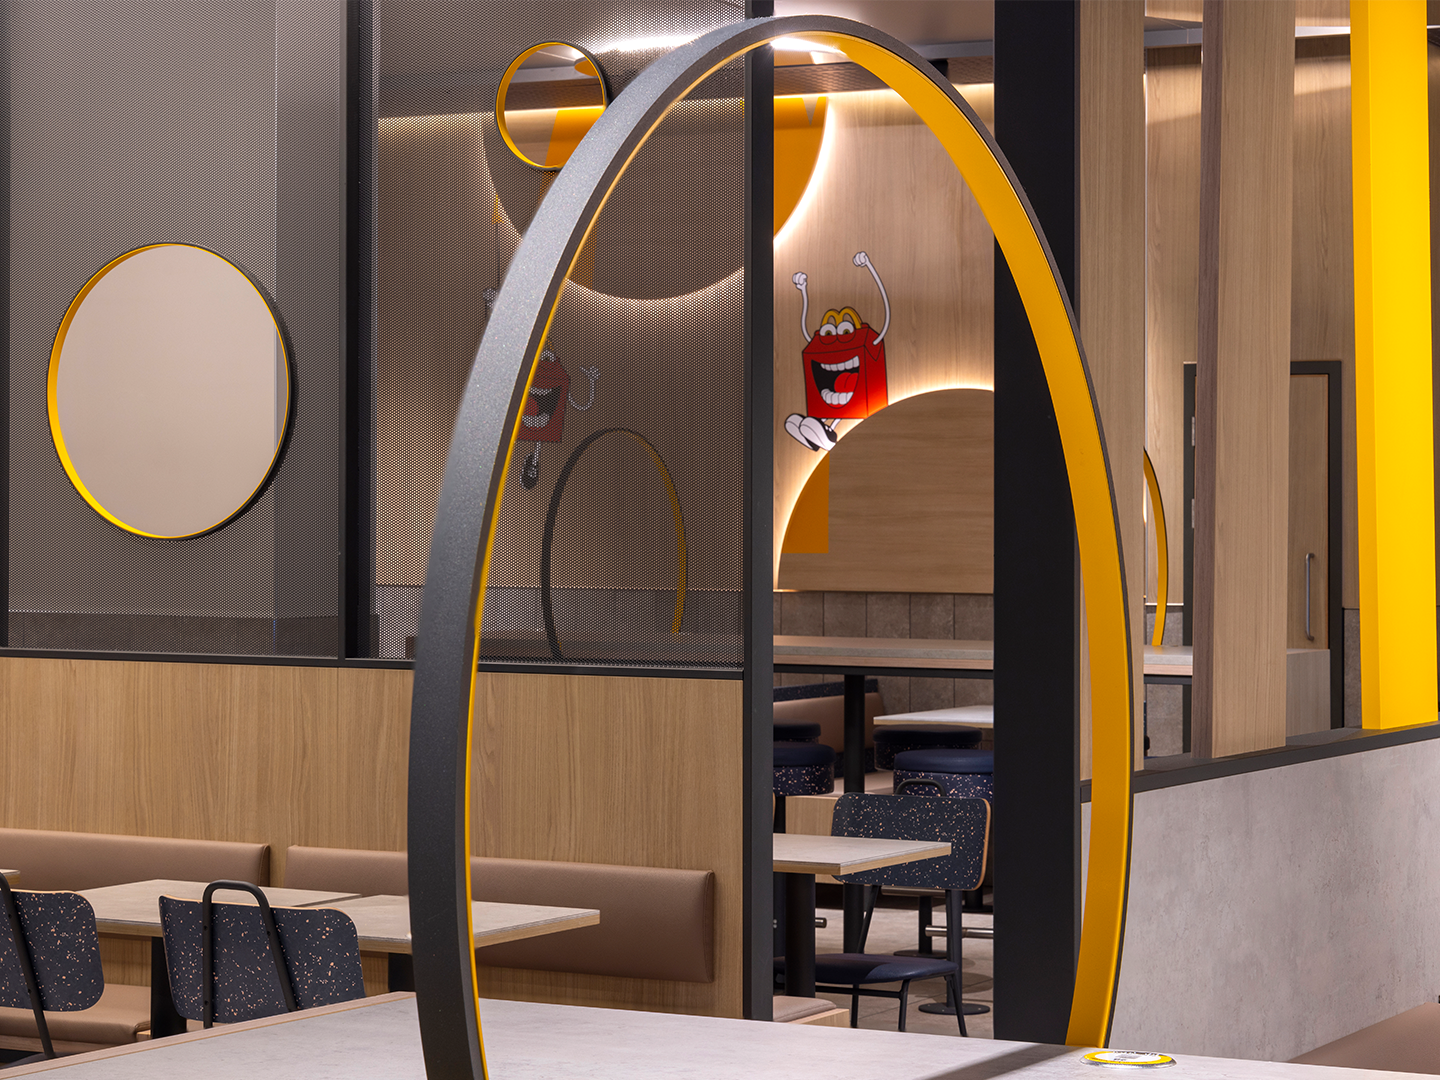 Conception de restaurant - Meubles de restaurant sur mesure - McDonald's Luna - Luminaires sur mesure - Meubles sure mesure - Industrie de la restauration